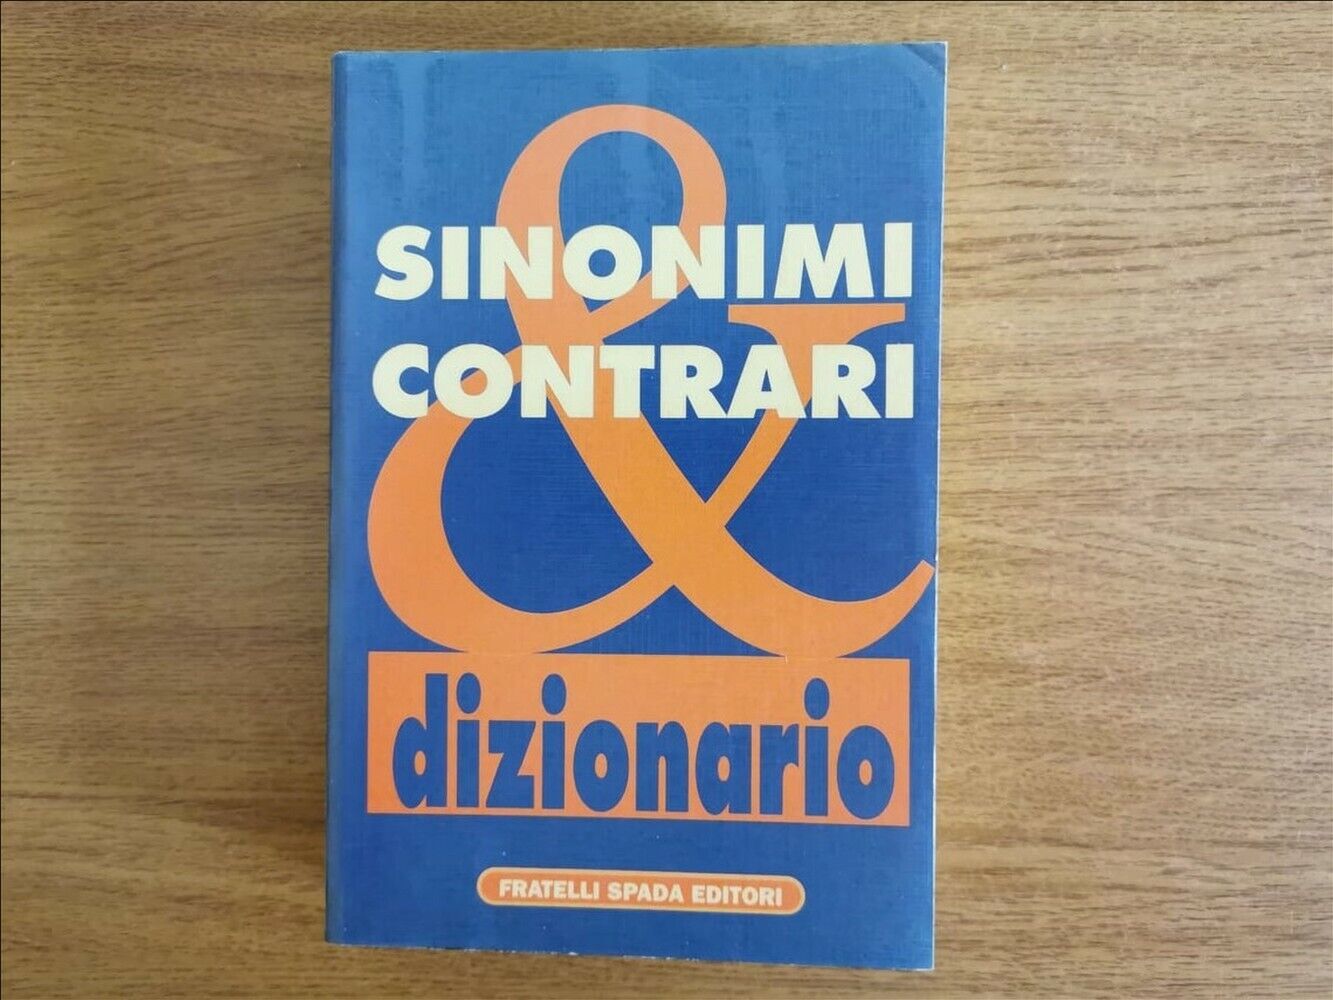 Dizionario dei sinonimi & contrari - AA. VV. - Fratelli Spada - 1997 - AR